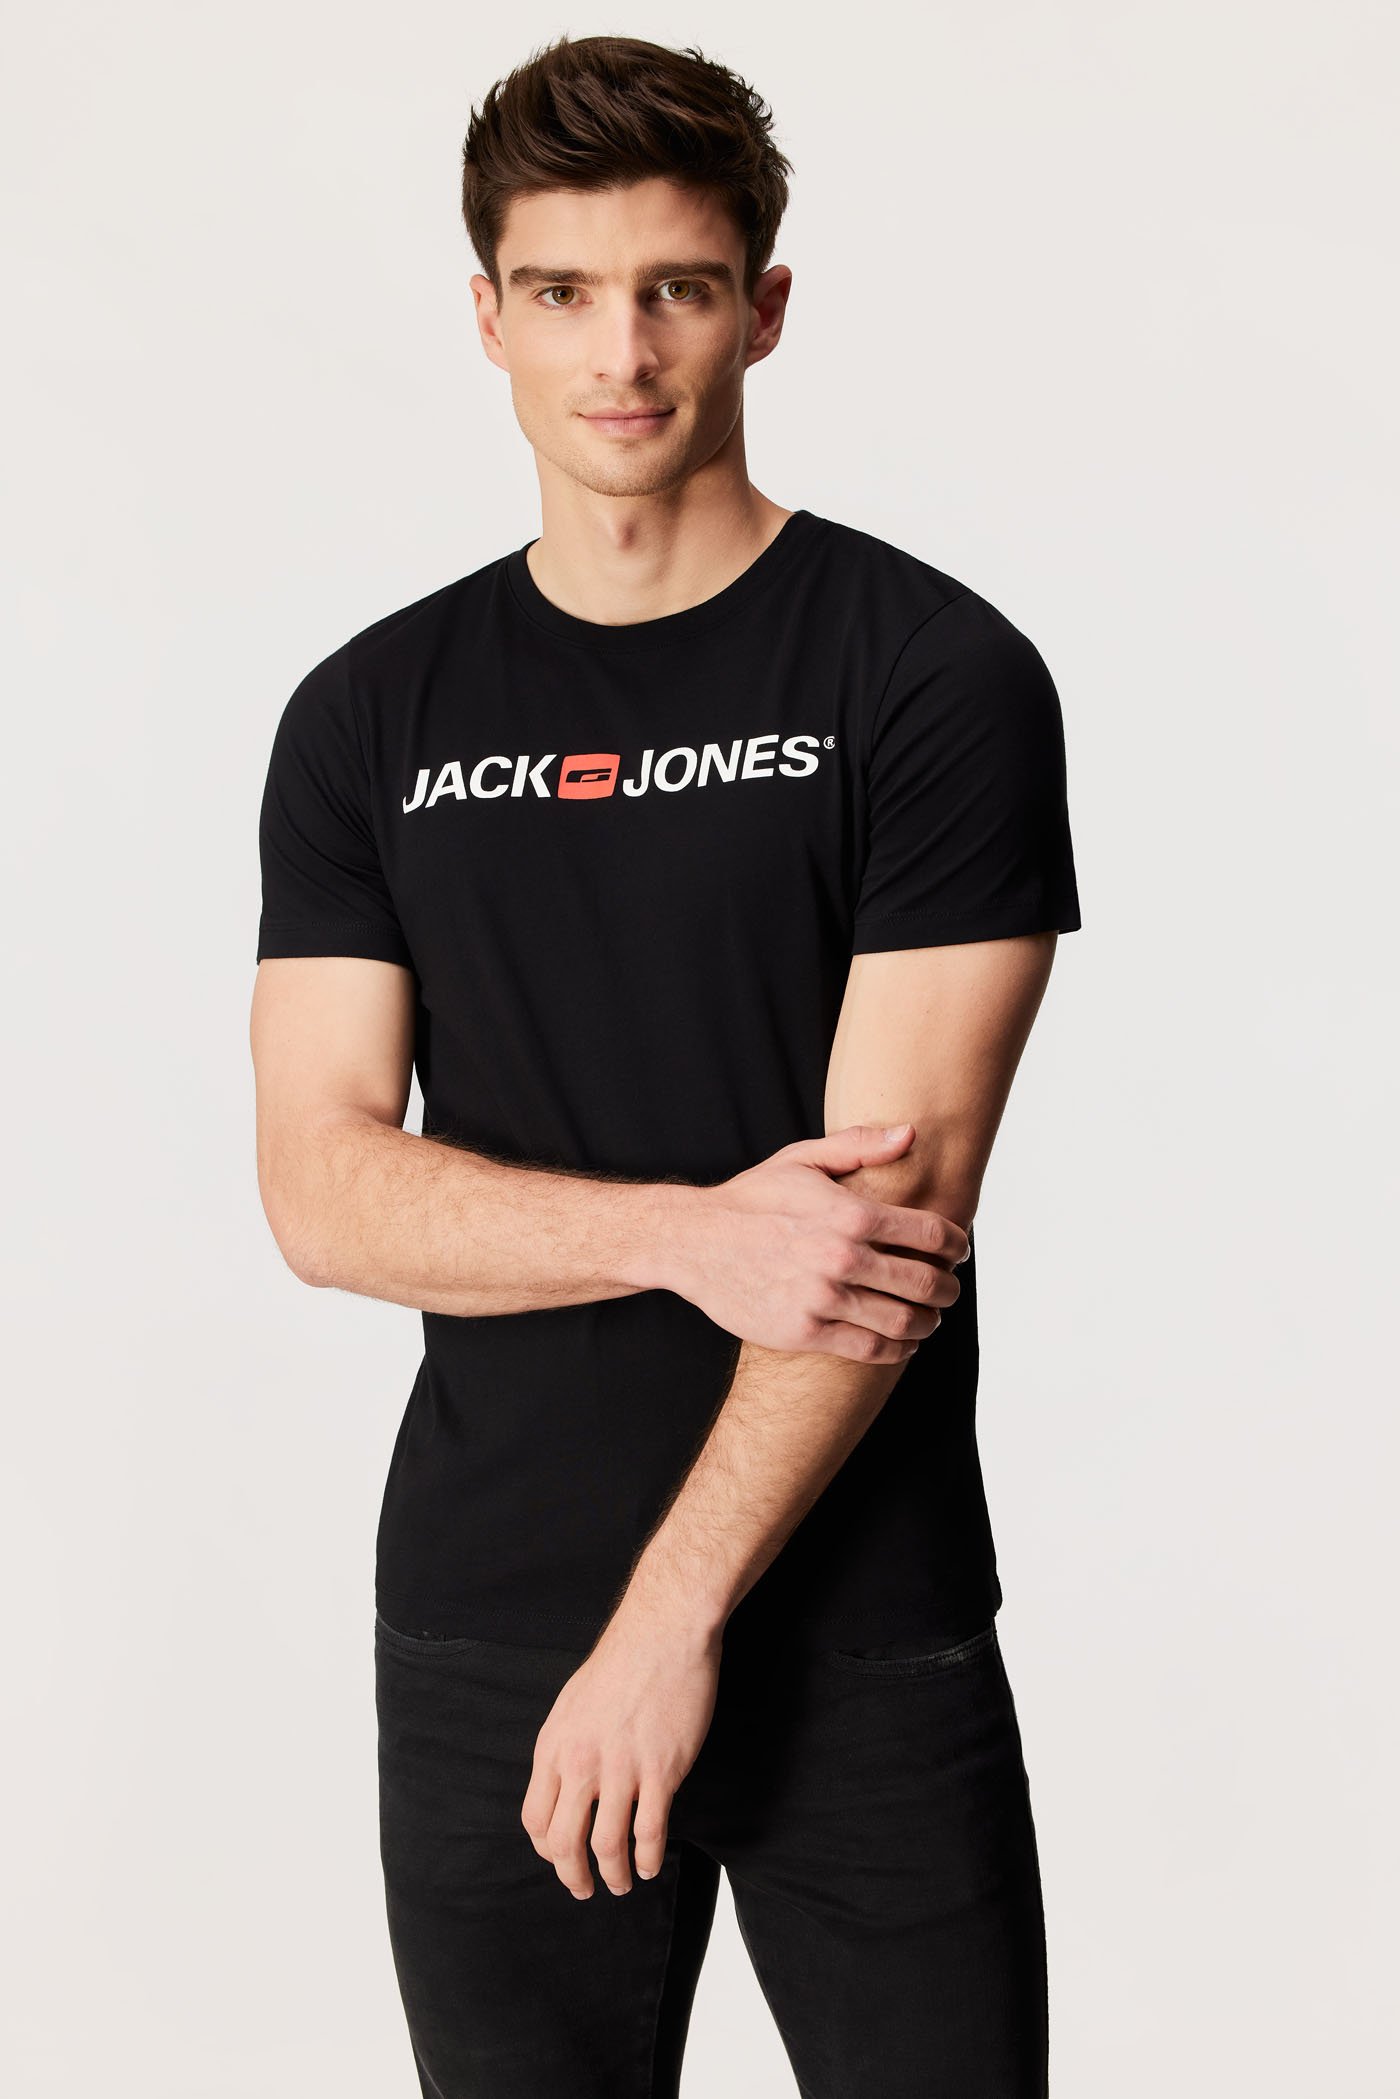 Μπλουζάκι Classic JACK AND JONES | Astratex.gr